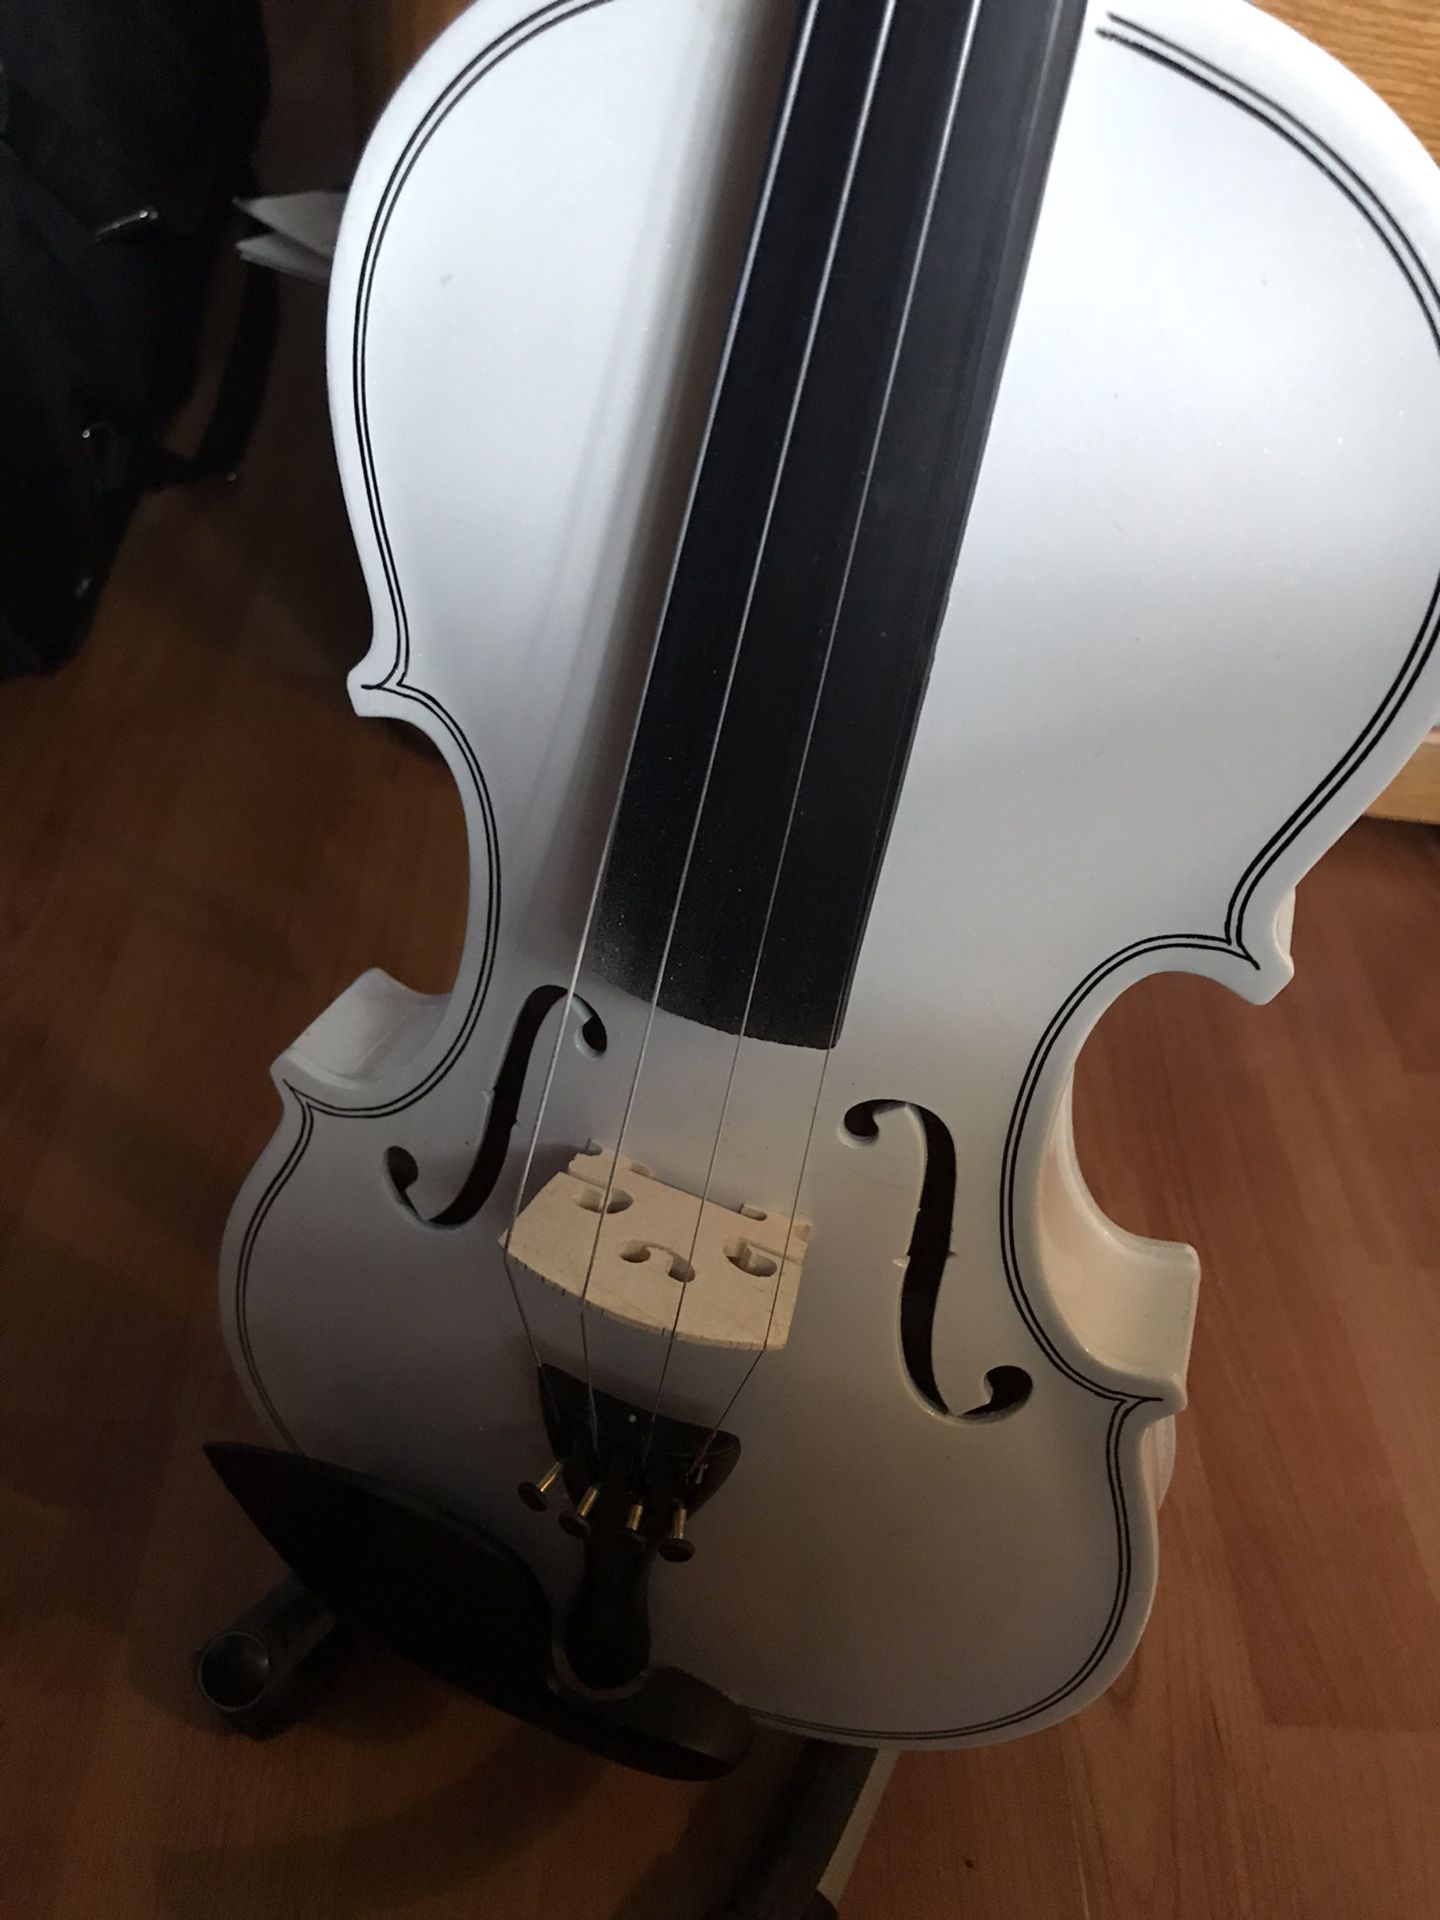 Violin White 4/4 new Case Bow Accessories Ocoee Fl pickerstv